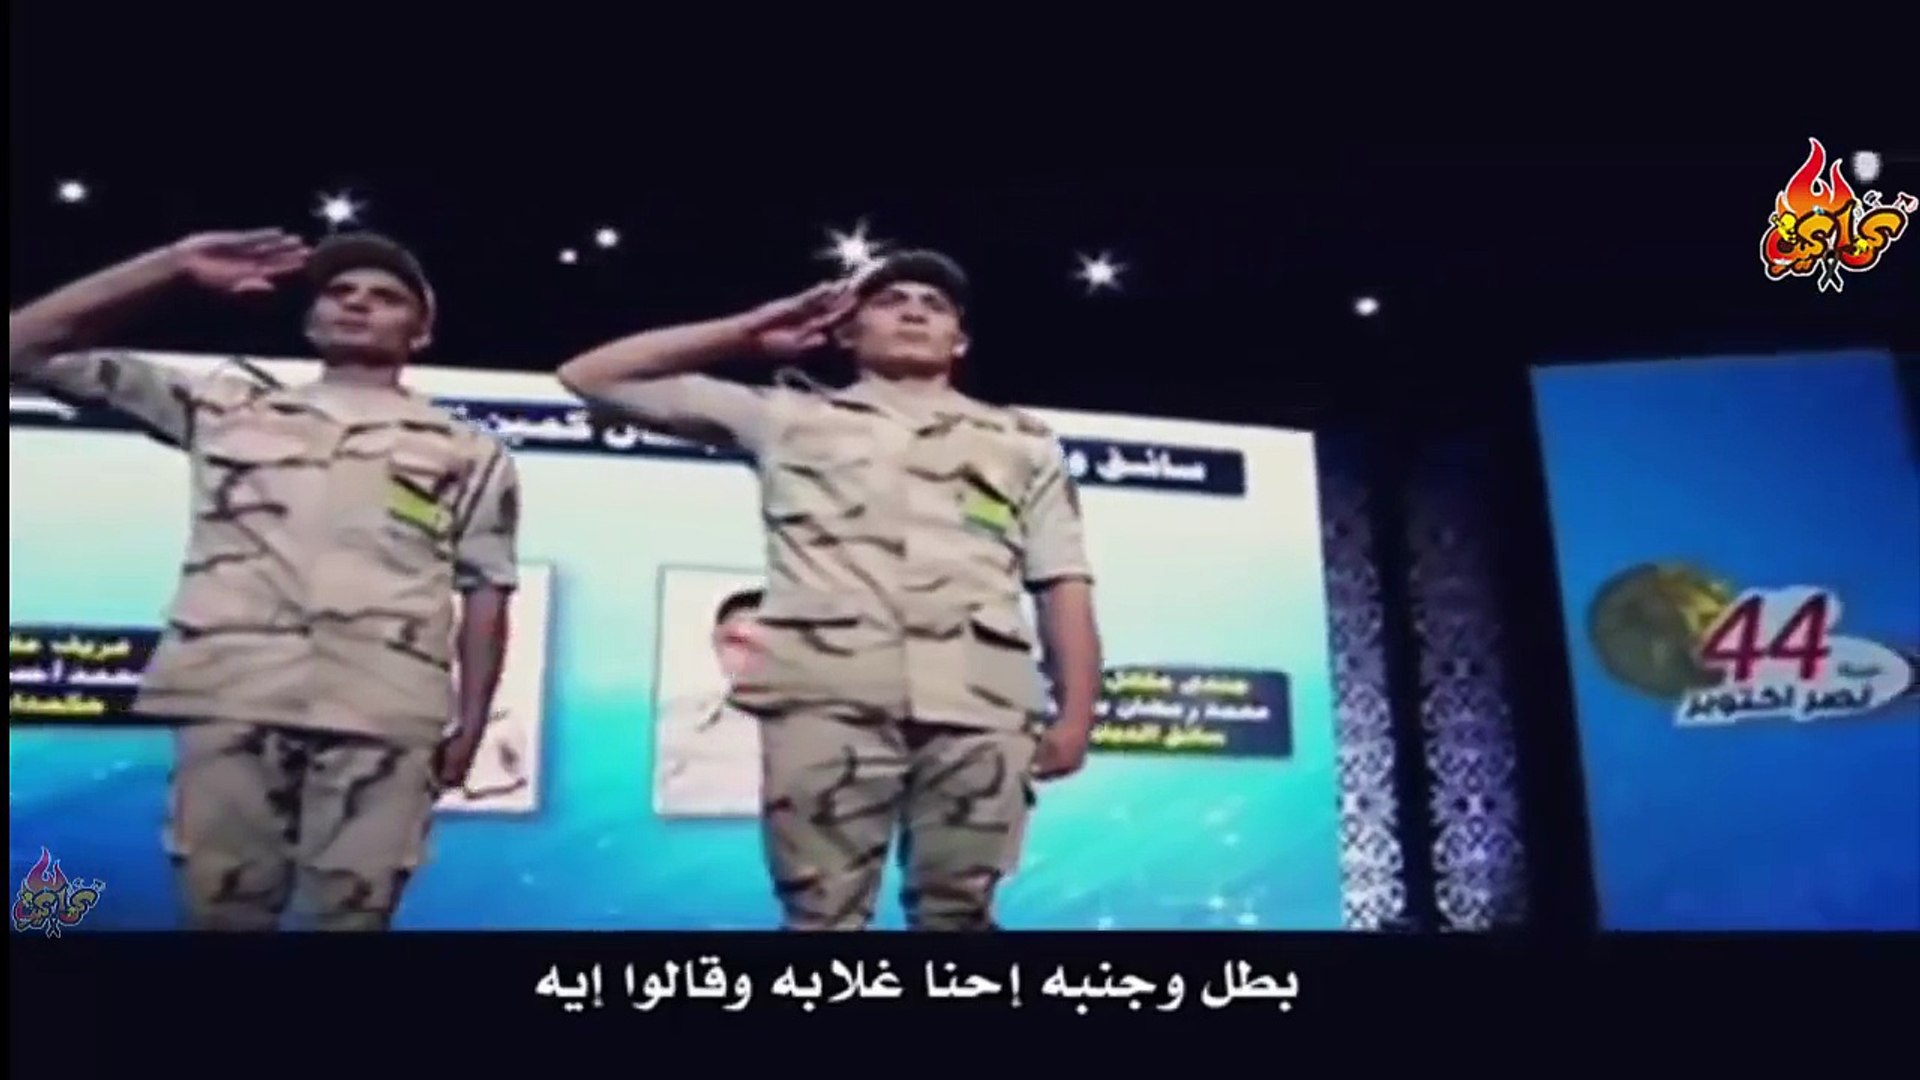 قالوا إيه - النسخة الأصلية كاملة - بصوت وحوش الصاعقة المصرية كتيبة 103 -  الجيش المصرى - video Dailymotion